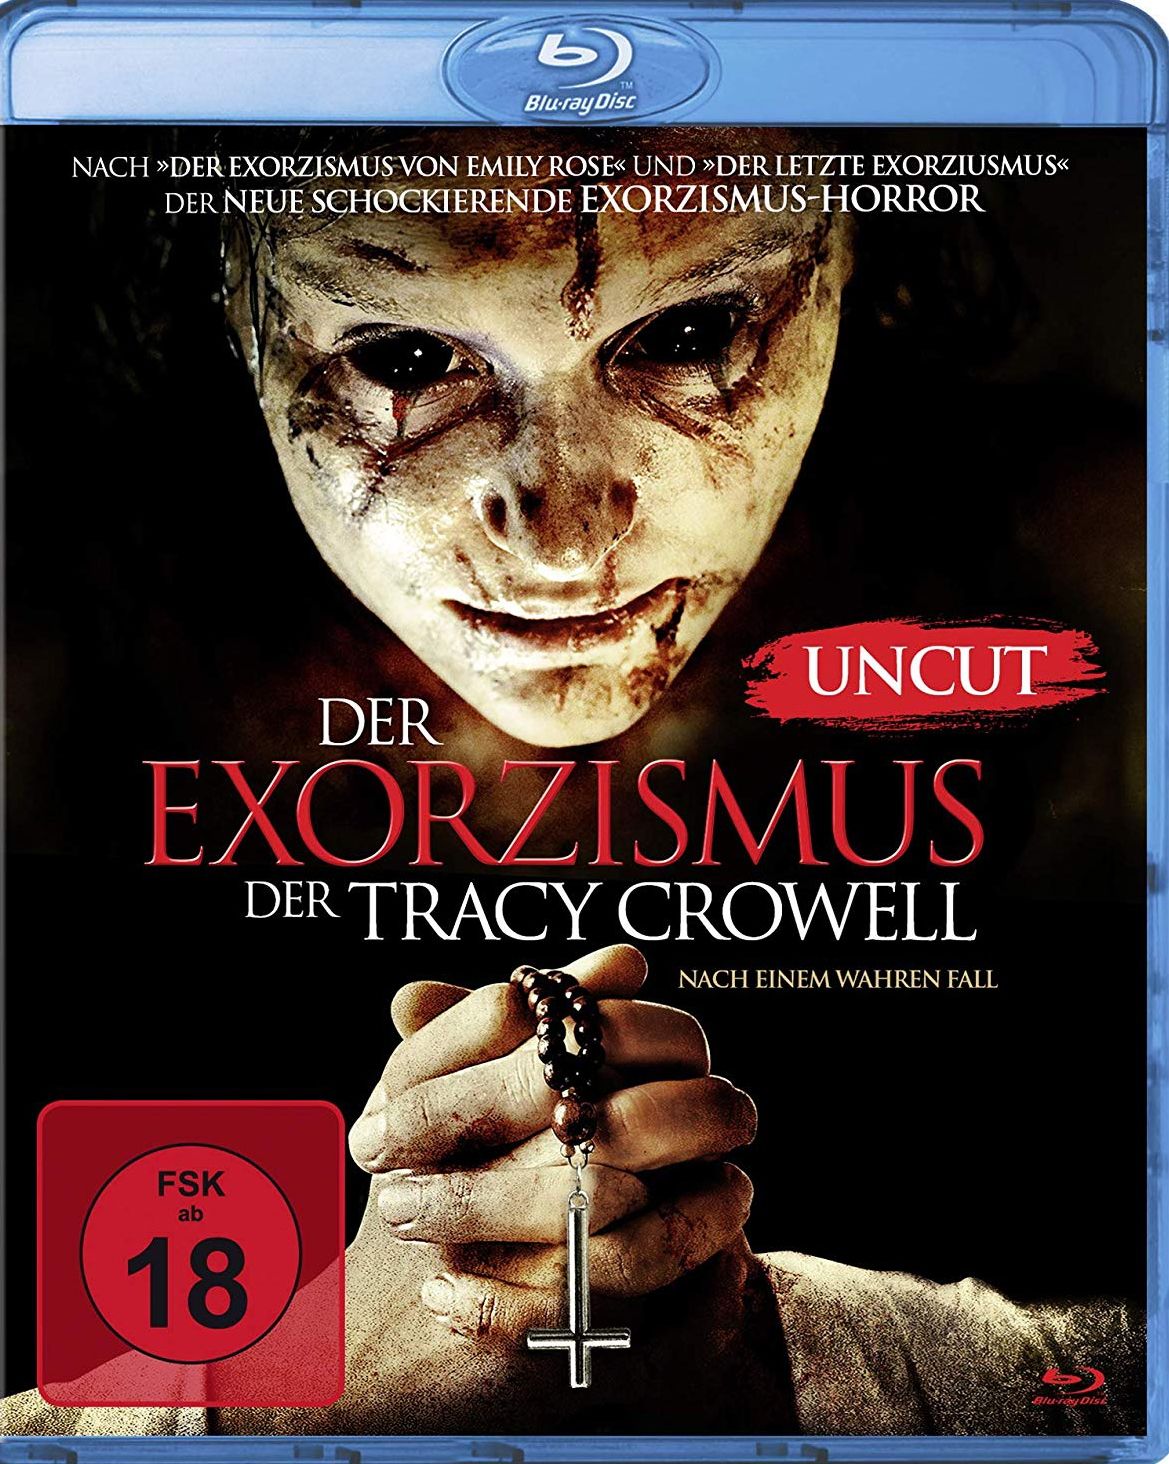 Exorzismus der Tracy Crowell, Der (Uncut) (BLURAY)